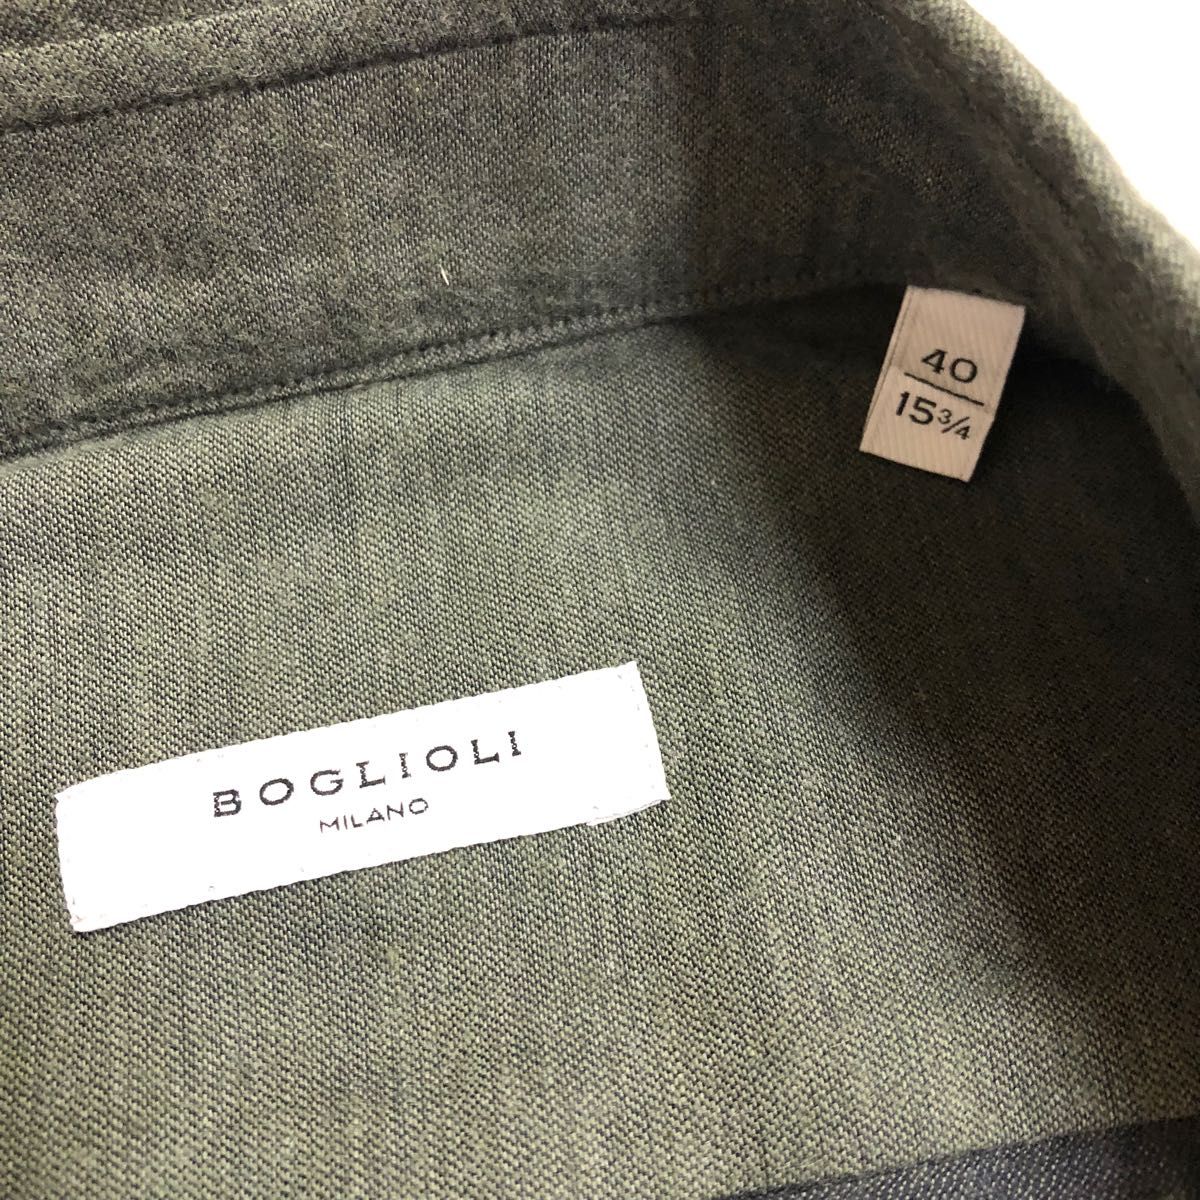 新品BOGLIOLI ワイドカラーシャツグレー系40 15 3/4(L程度)